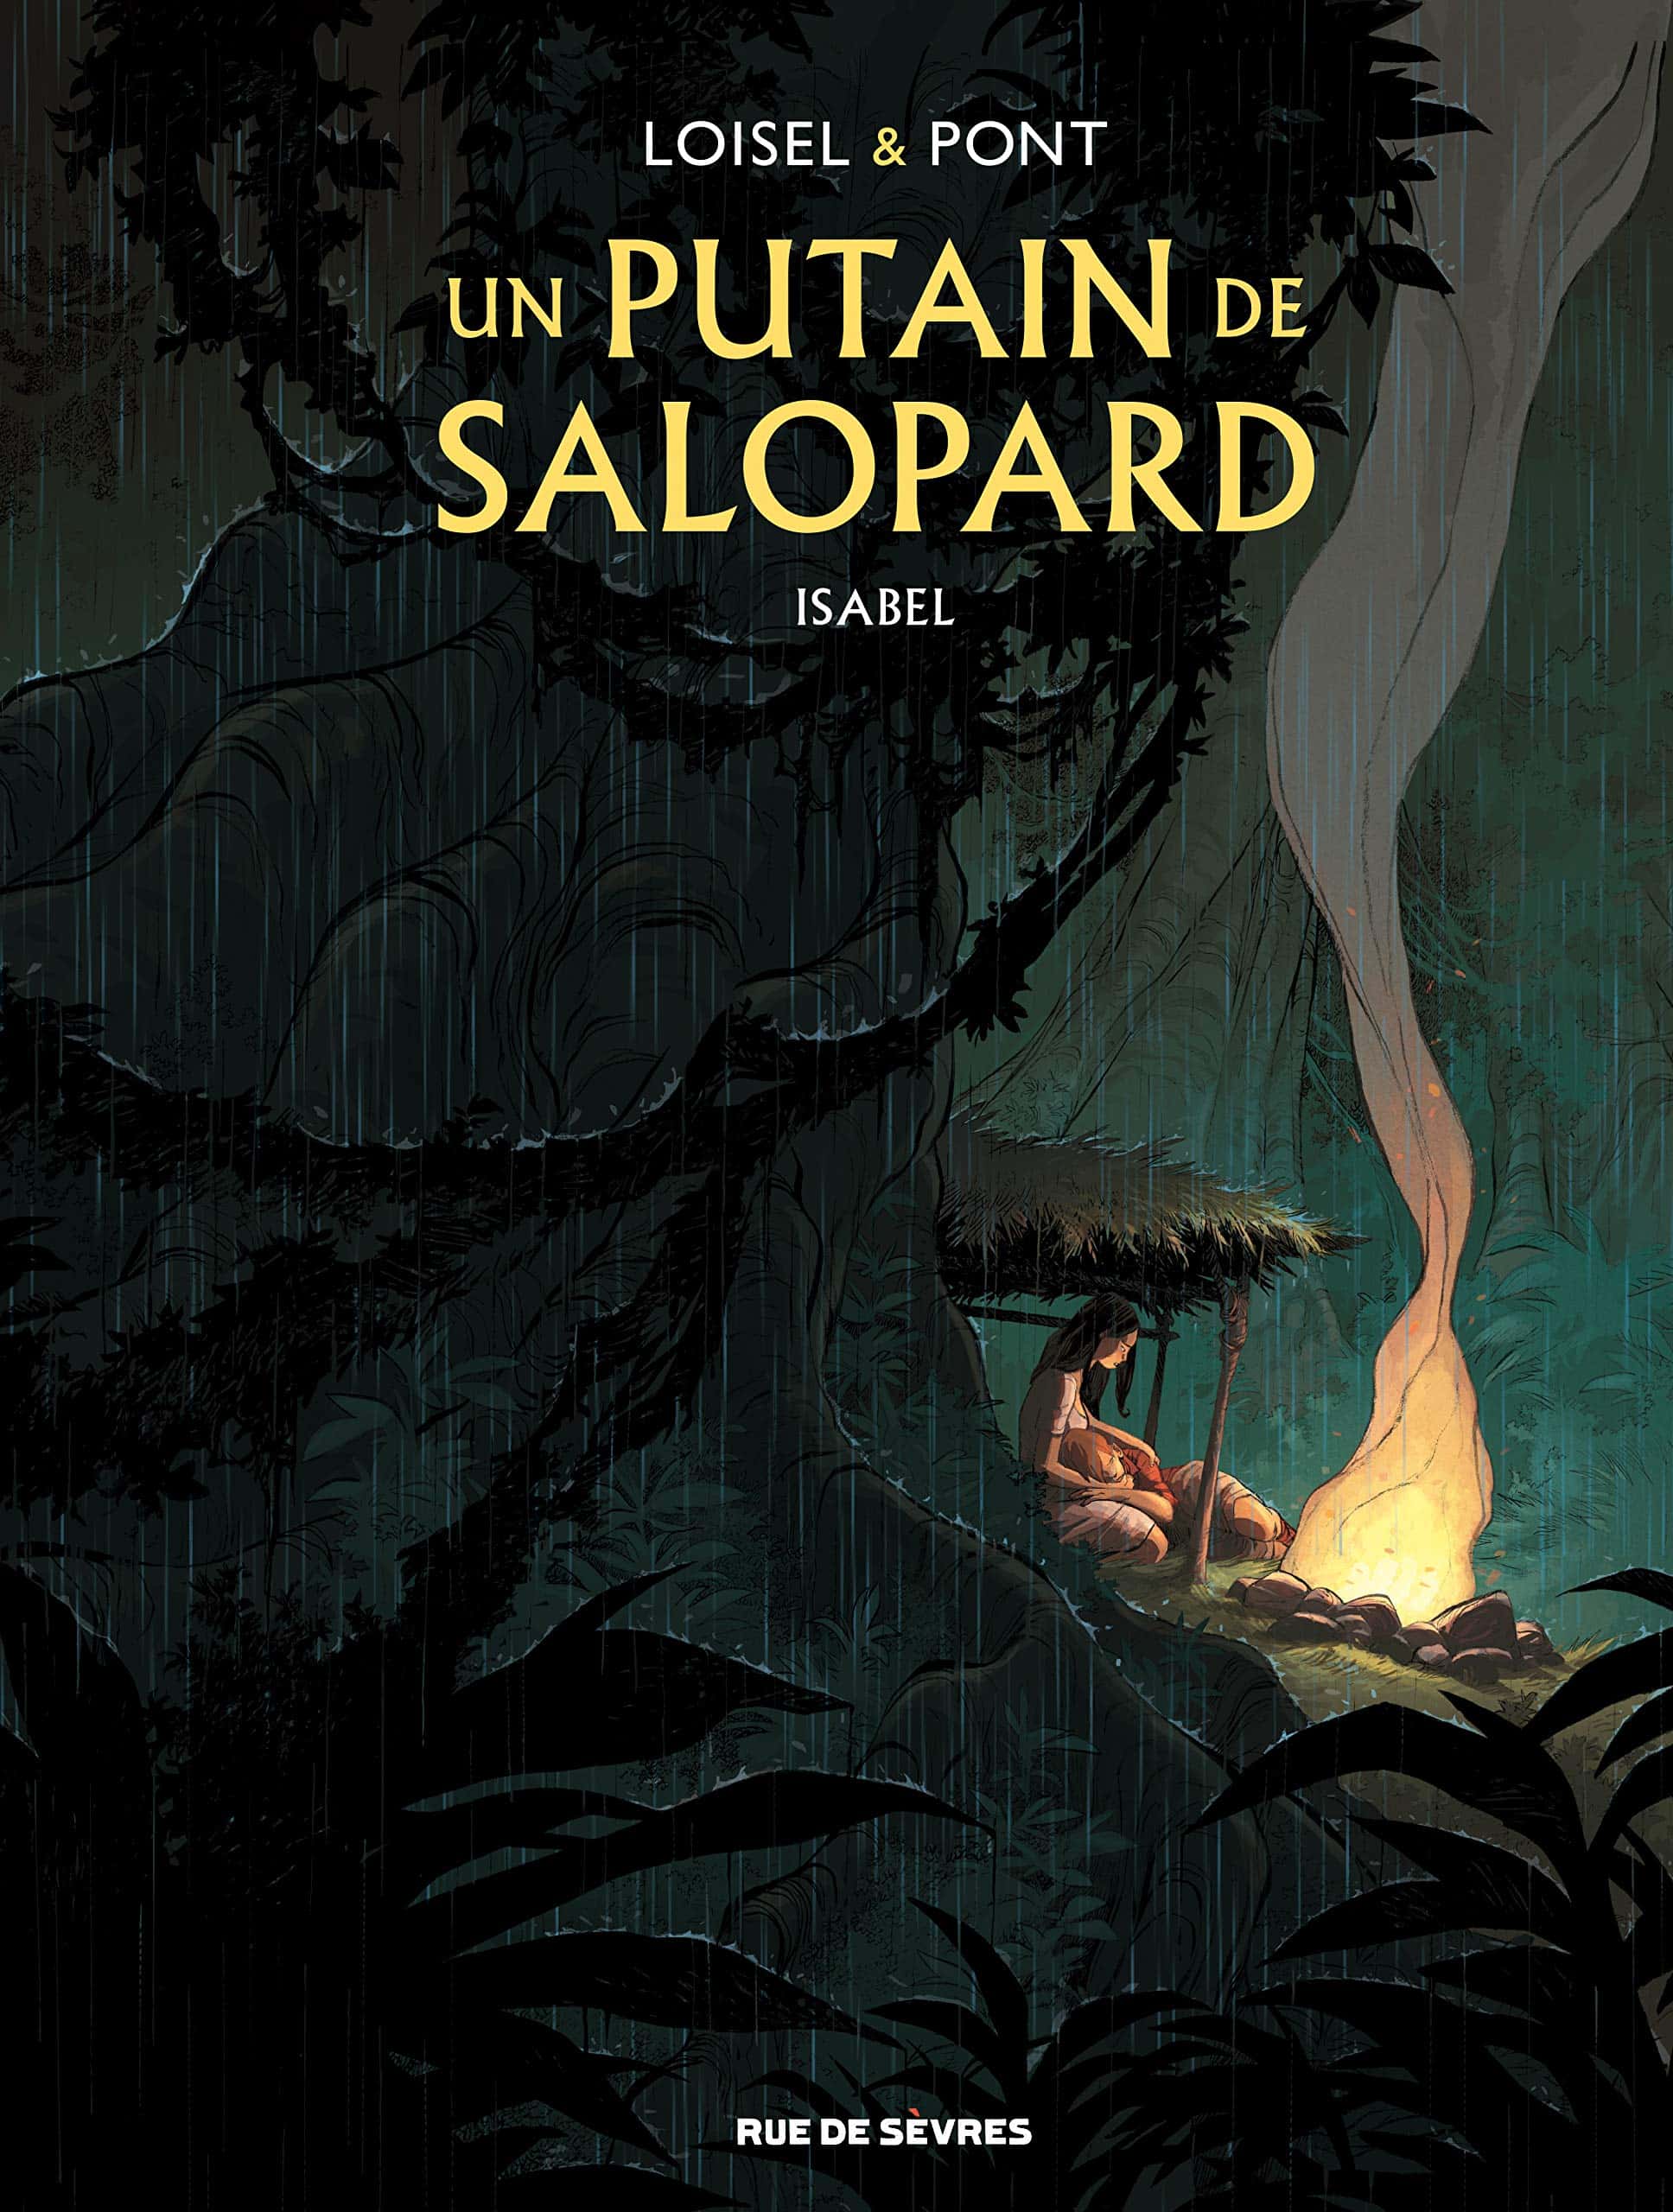 "UN PUTAIN DE SALOPARD", Tome 1: ISABEL (Olivier Pont, Régis Loisel)